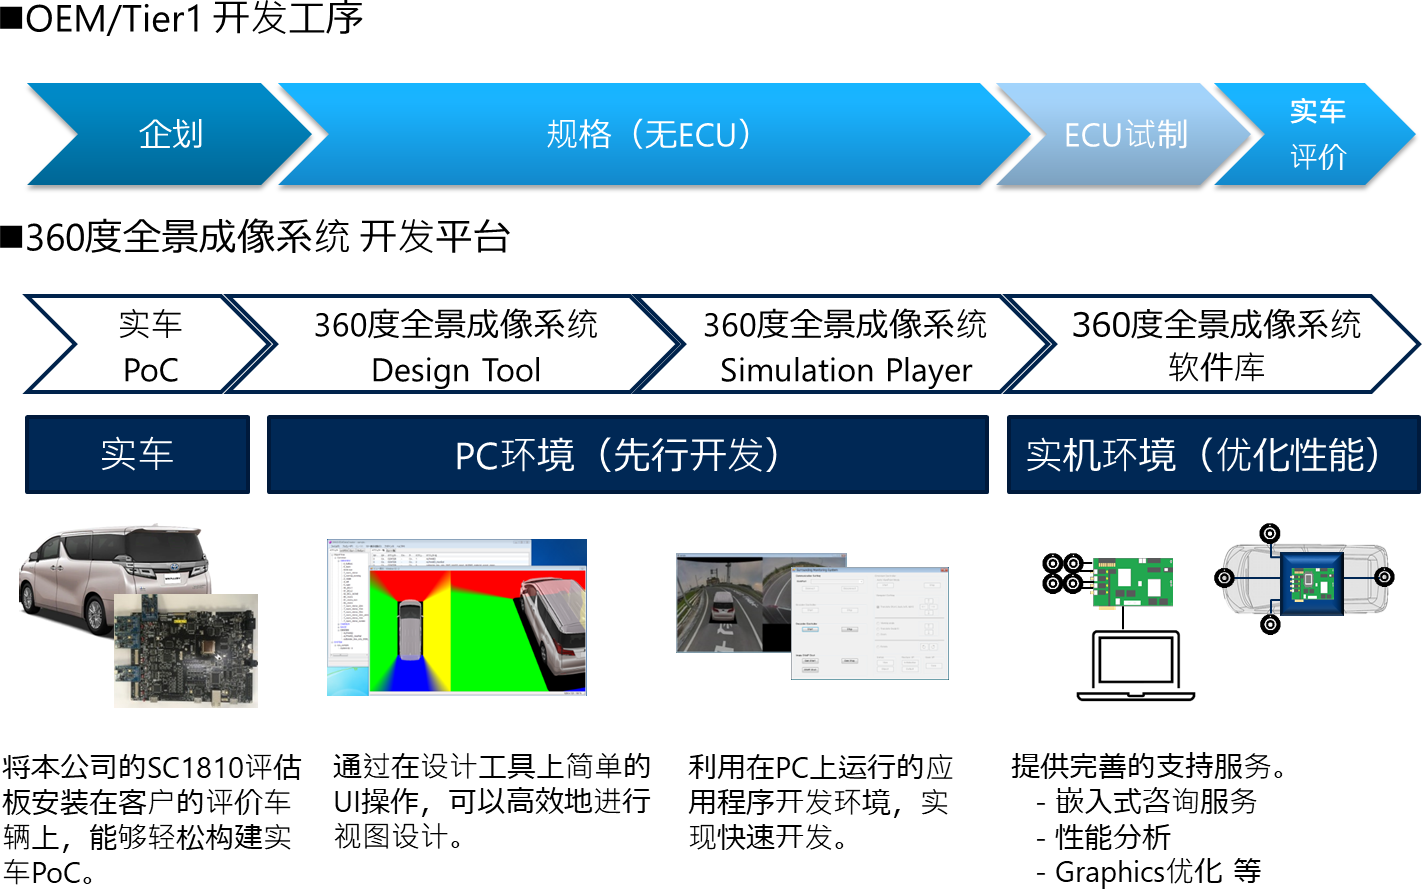 “360度全景成像系统”开发平台